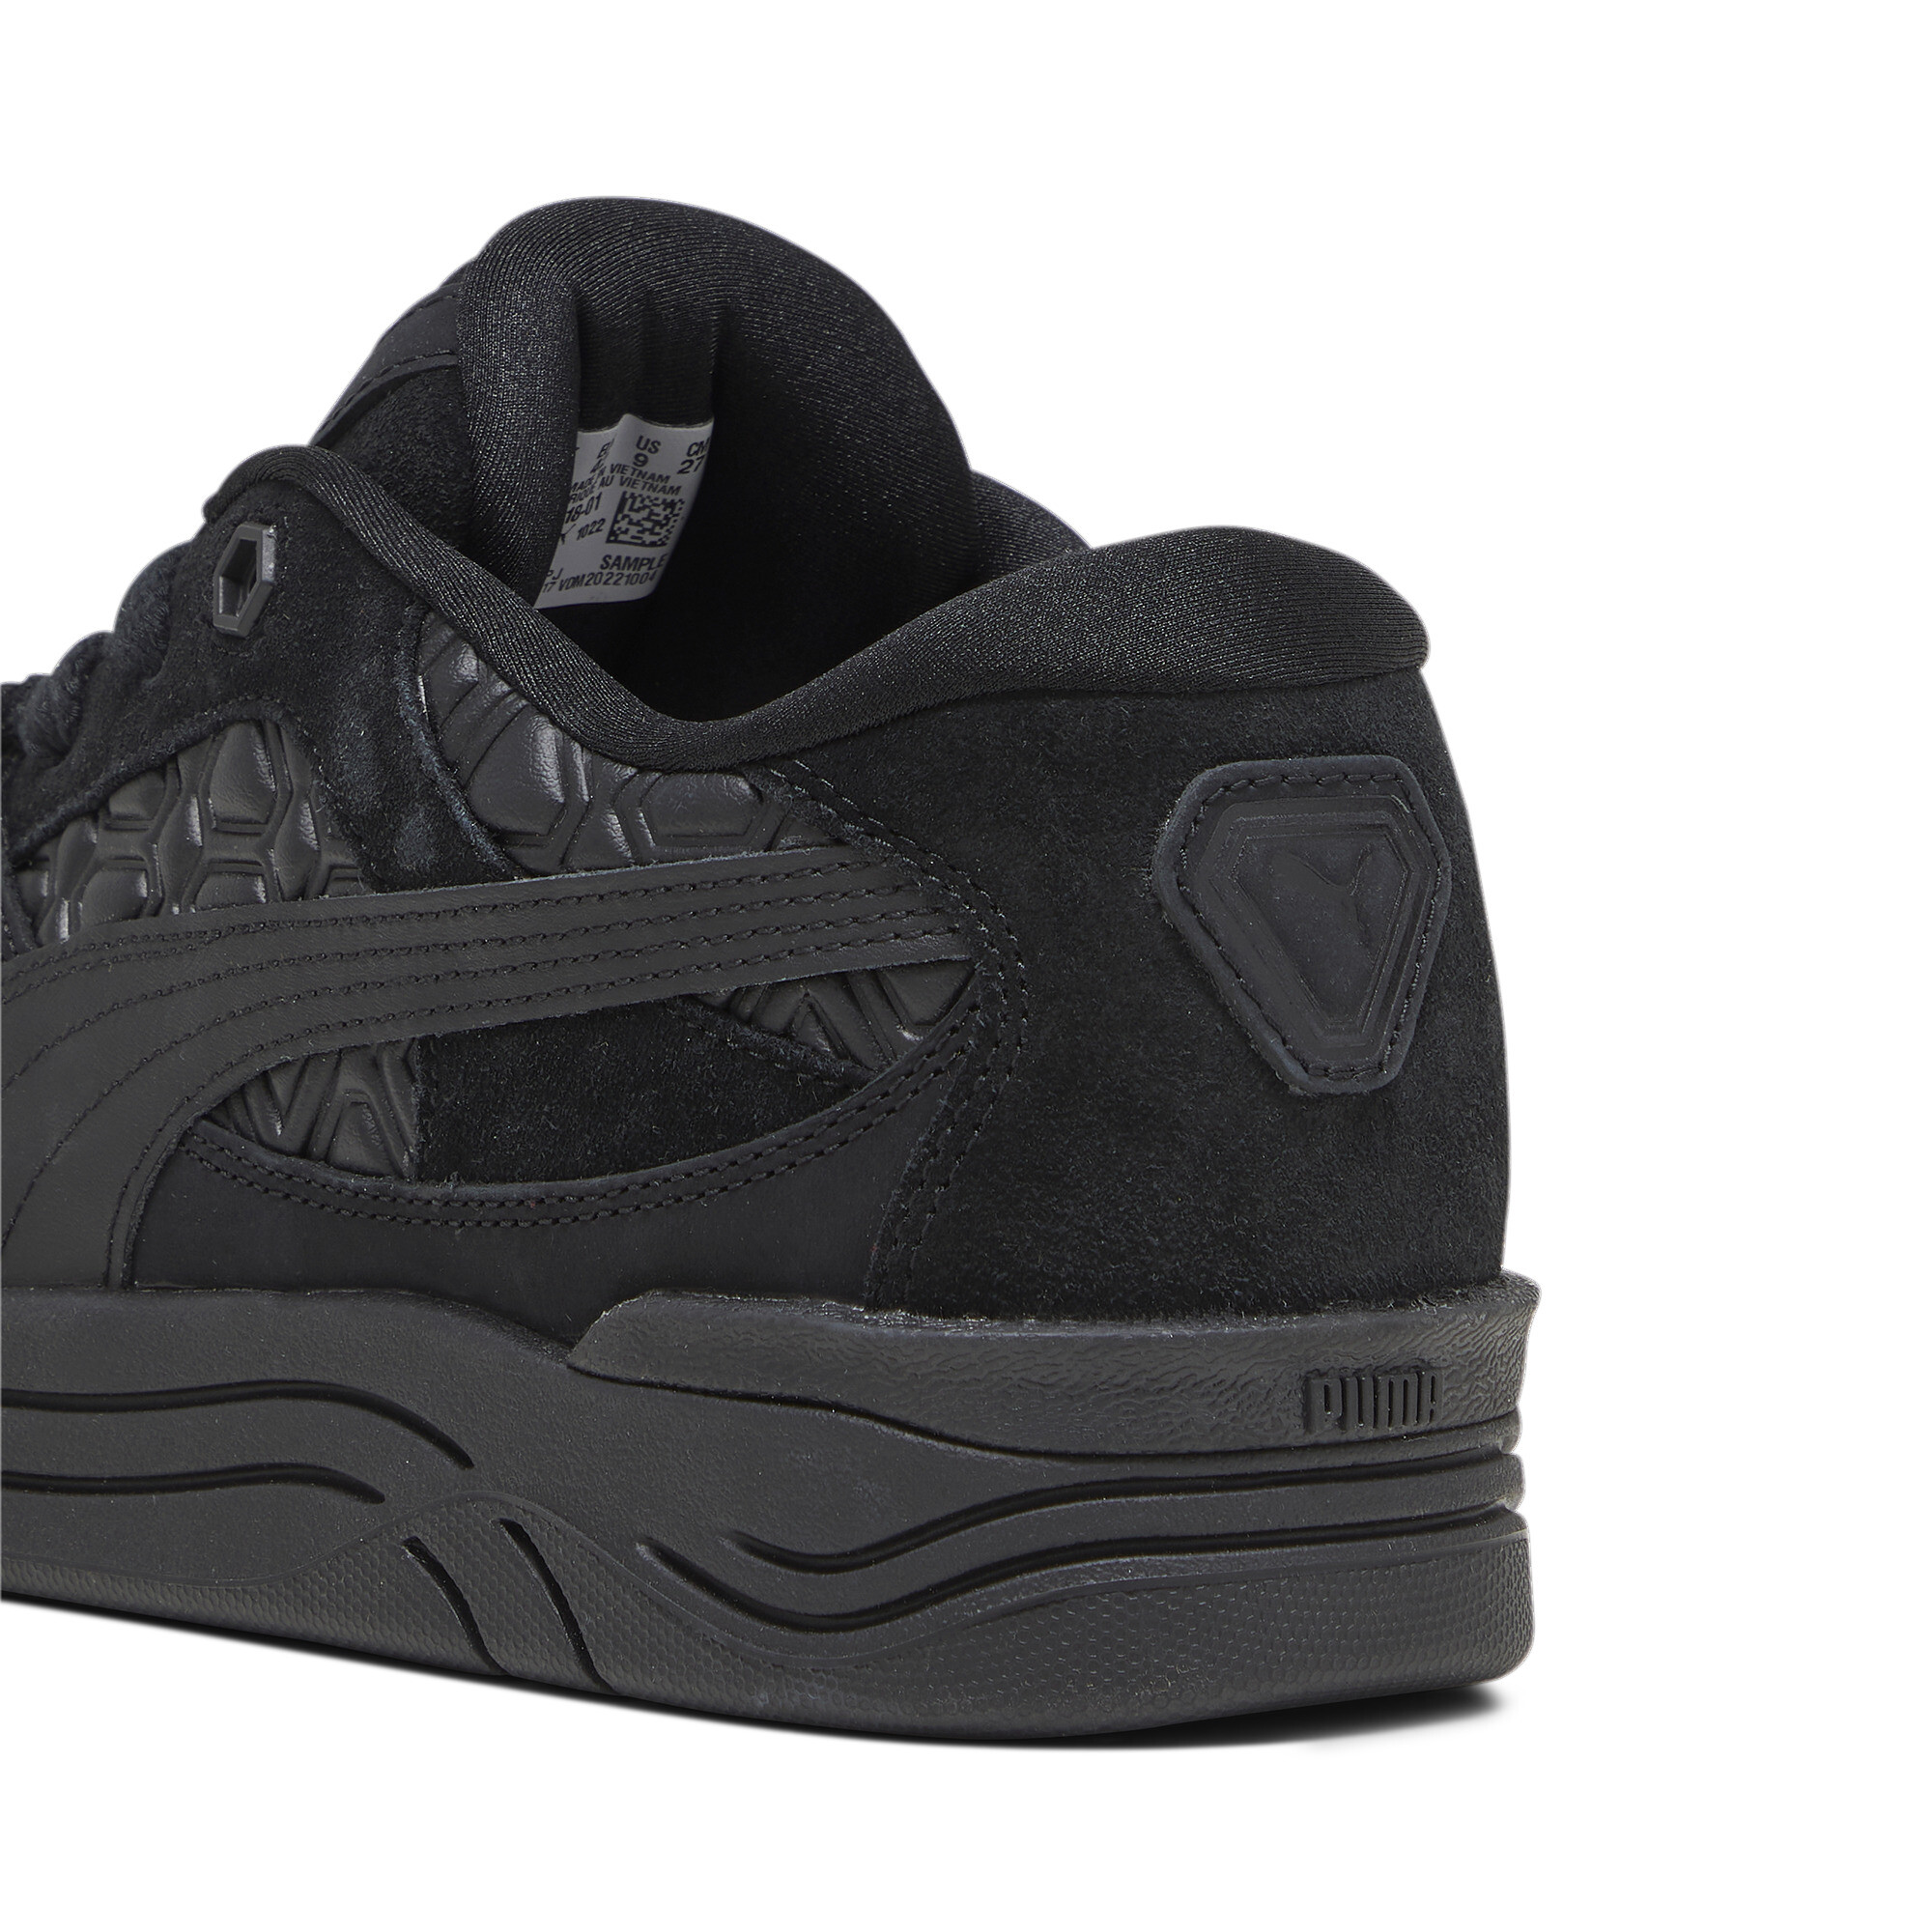 Men's LUXE SPORT PUMA-180 Sneakers In Black, Size EU 41